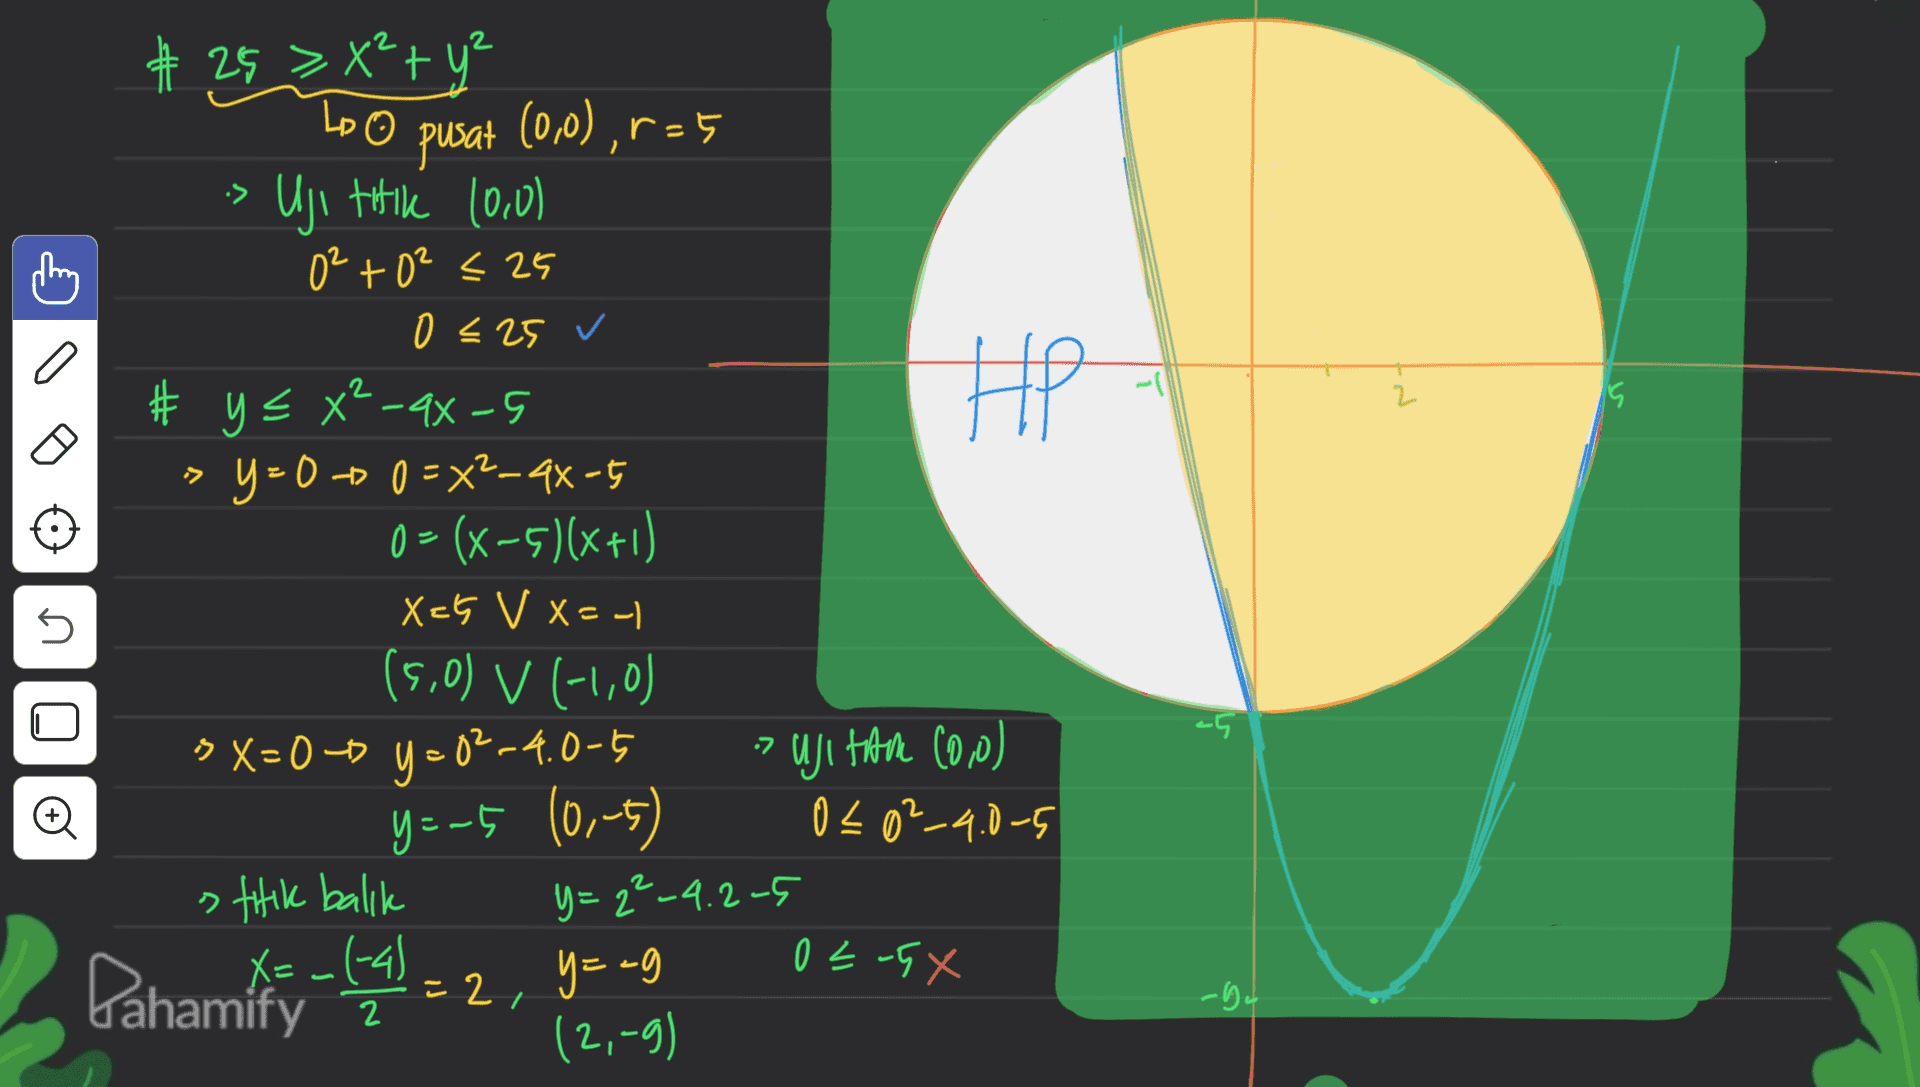 Lo •> 2 # 25 >X² + y² pusat (0,0),r=5 • Uji titik (0,0) 0²+02<25 0 <25 ✓ # y = x? -4- Y = 0 + 0 = x2-4X-5 0=(x-5)(x+1) Xcs V X=- (5,0) V (-1,0) 5 X=0-6 y = 02-4.0-5 HP 15 -D n -5 .2 - 020²_4.0-5 ujital (0,0) y=-5 10,-5) stilik balik y=2²-4.2-5 X=-(-41 02-5X Pahamity =2, y=ag -bu 2 (2,-9) 